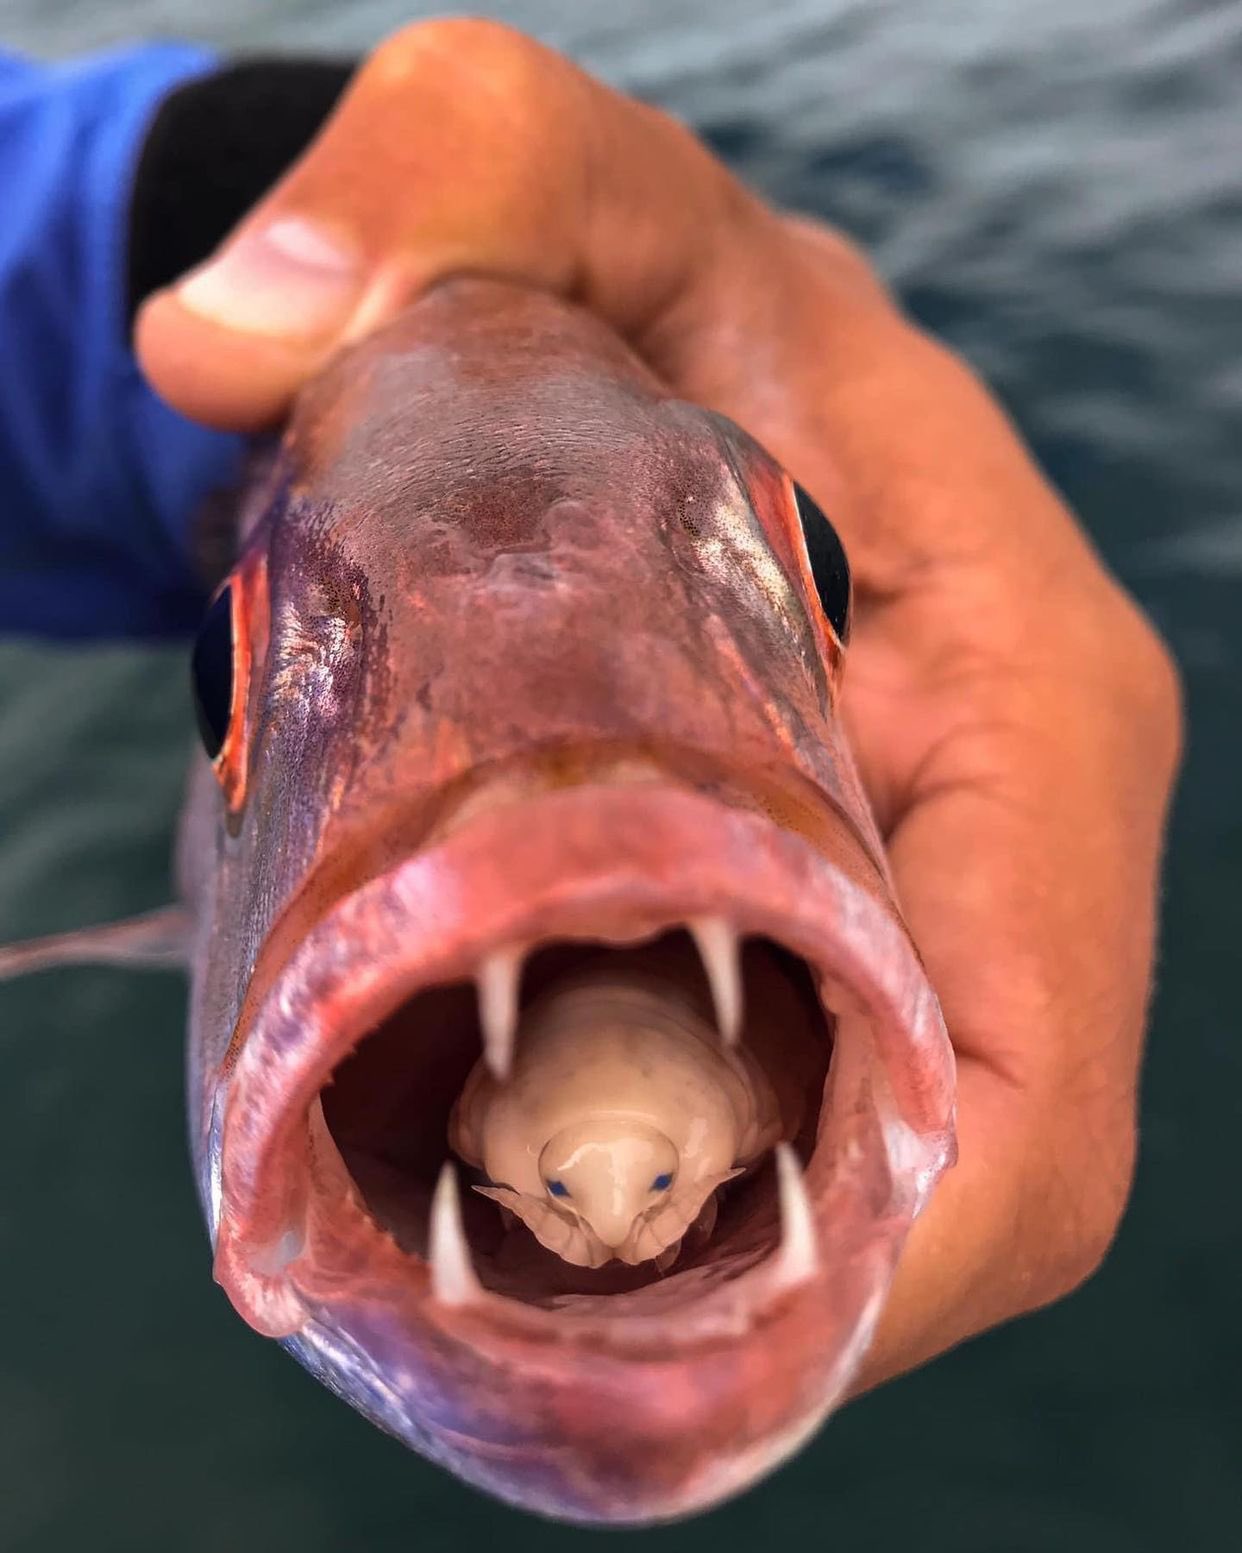 نمایی نزدیک از شپش زبان خوار در دهان ماهی + عکس